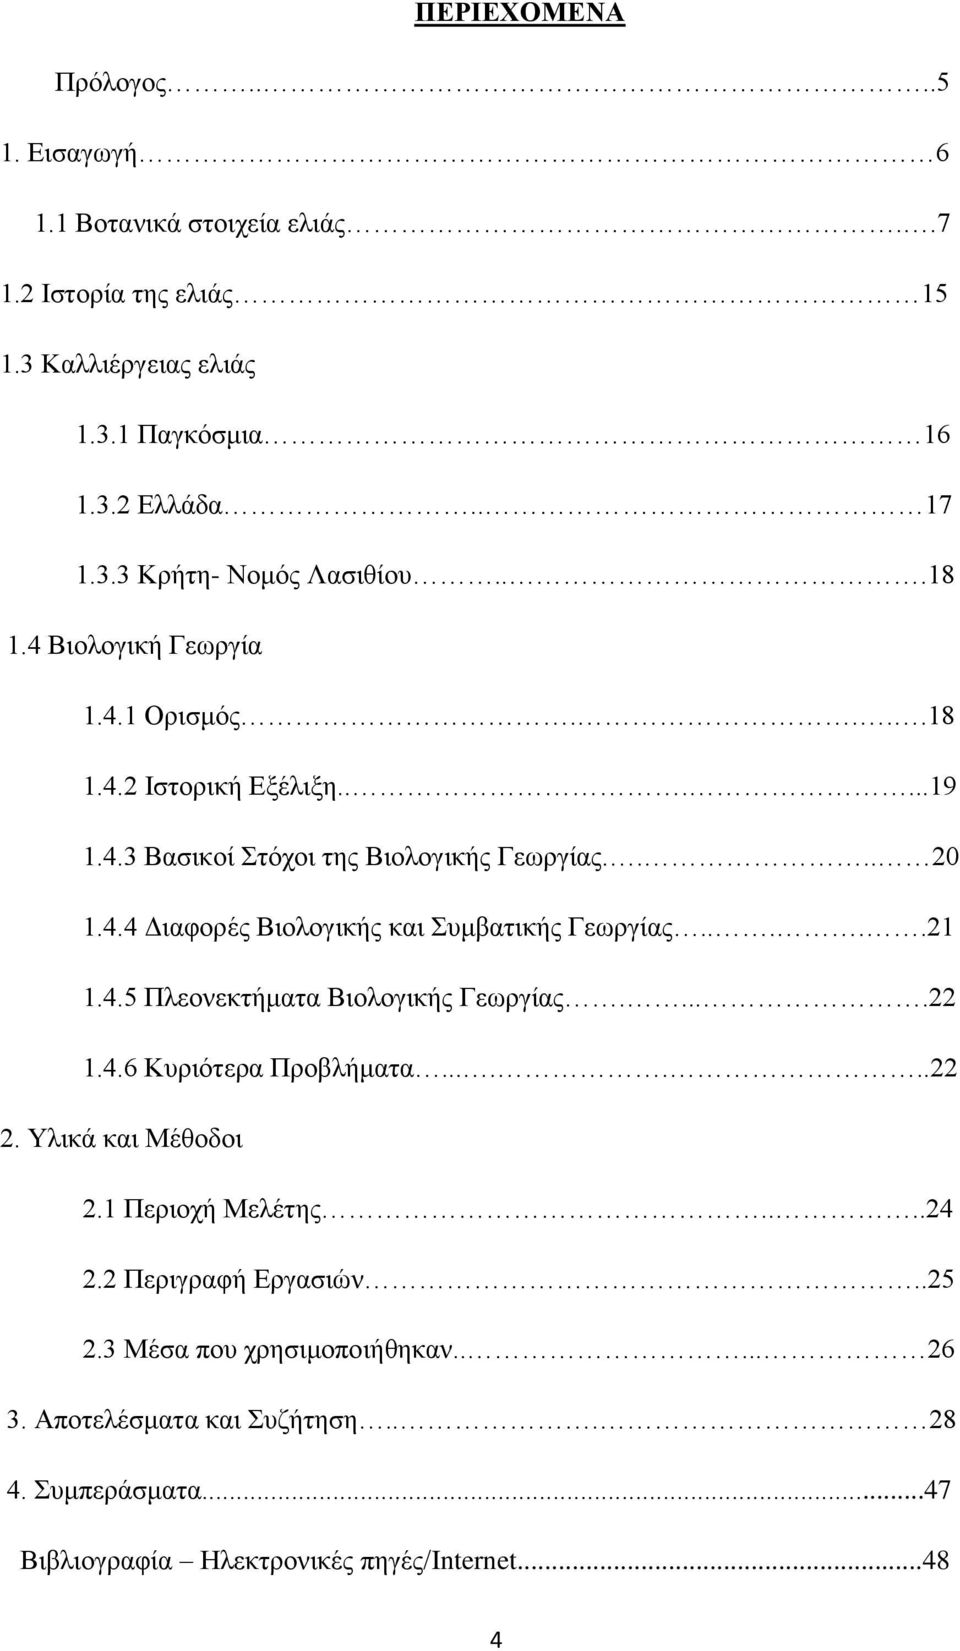 ....21 1.4.5 Πλεονεκτήματα Βιολογικής Γεωργίας.....22 1.4.6 Κυριότερα Προβλήματα.......22 2. Υλικά και Μέθοδοι 2.1 Περιοχή Μελέτης....24 2.2 Περιγραφή Εργασιών..25 2.